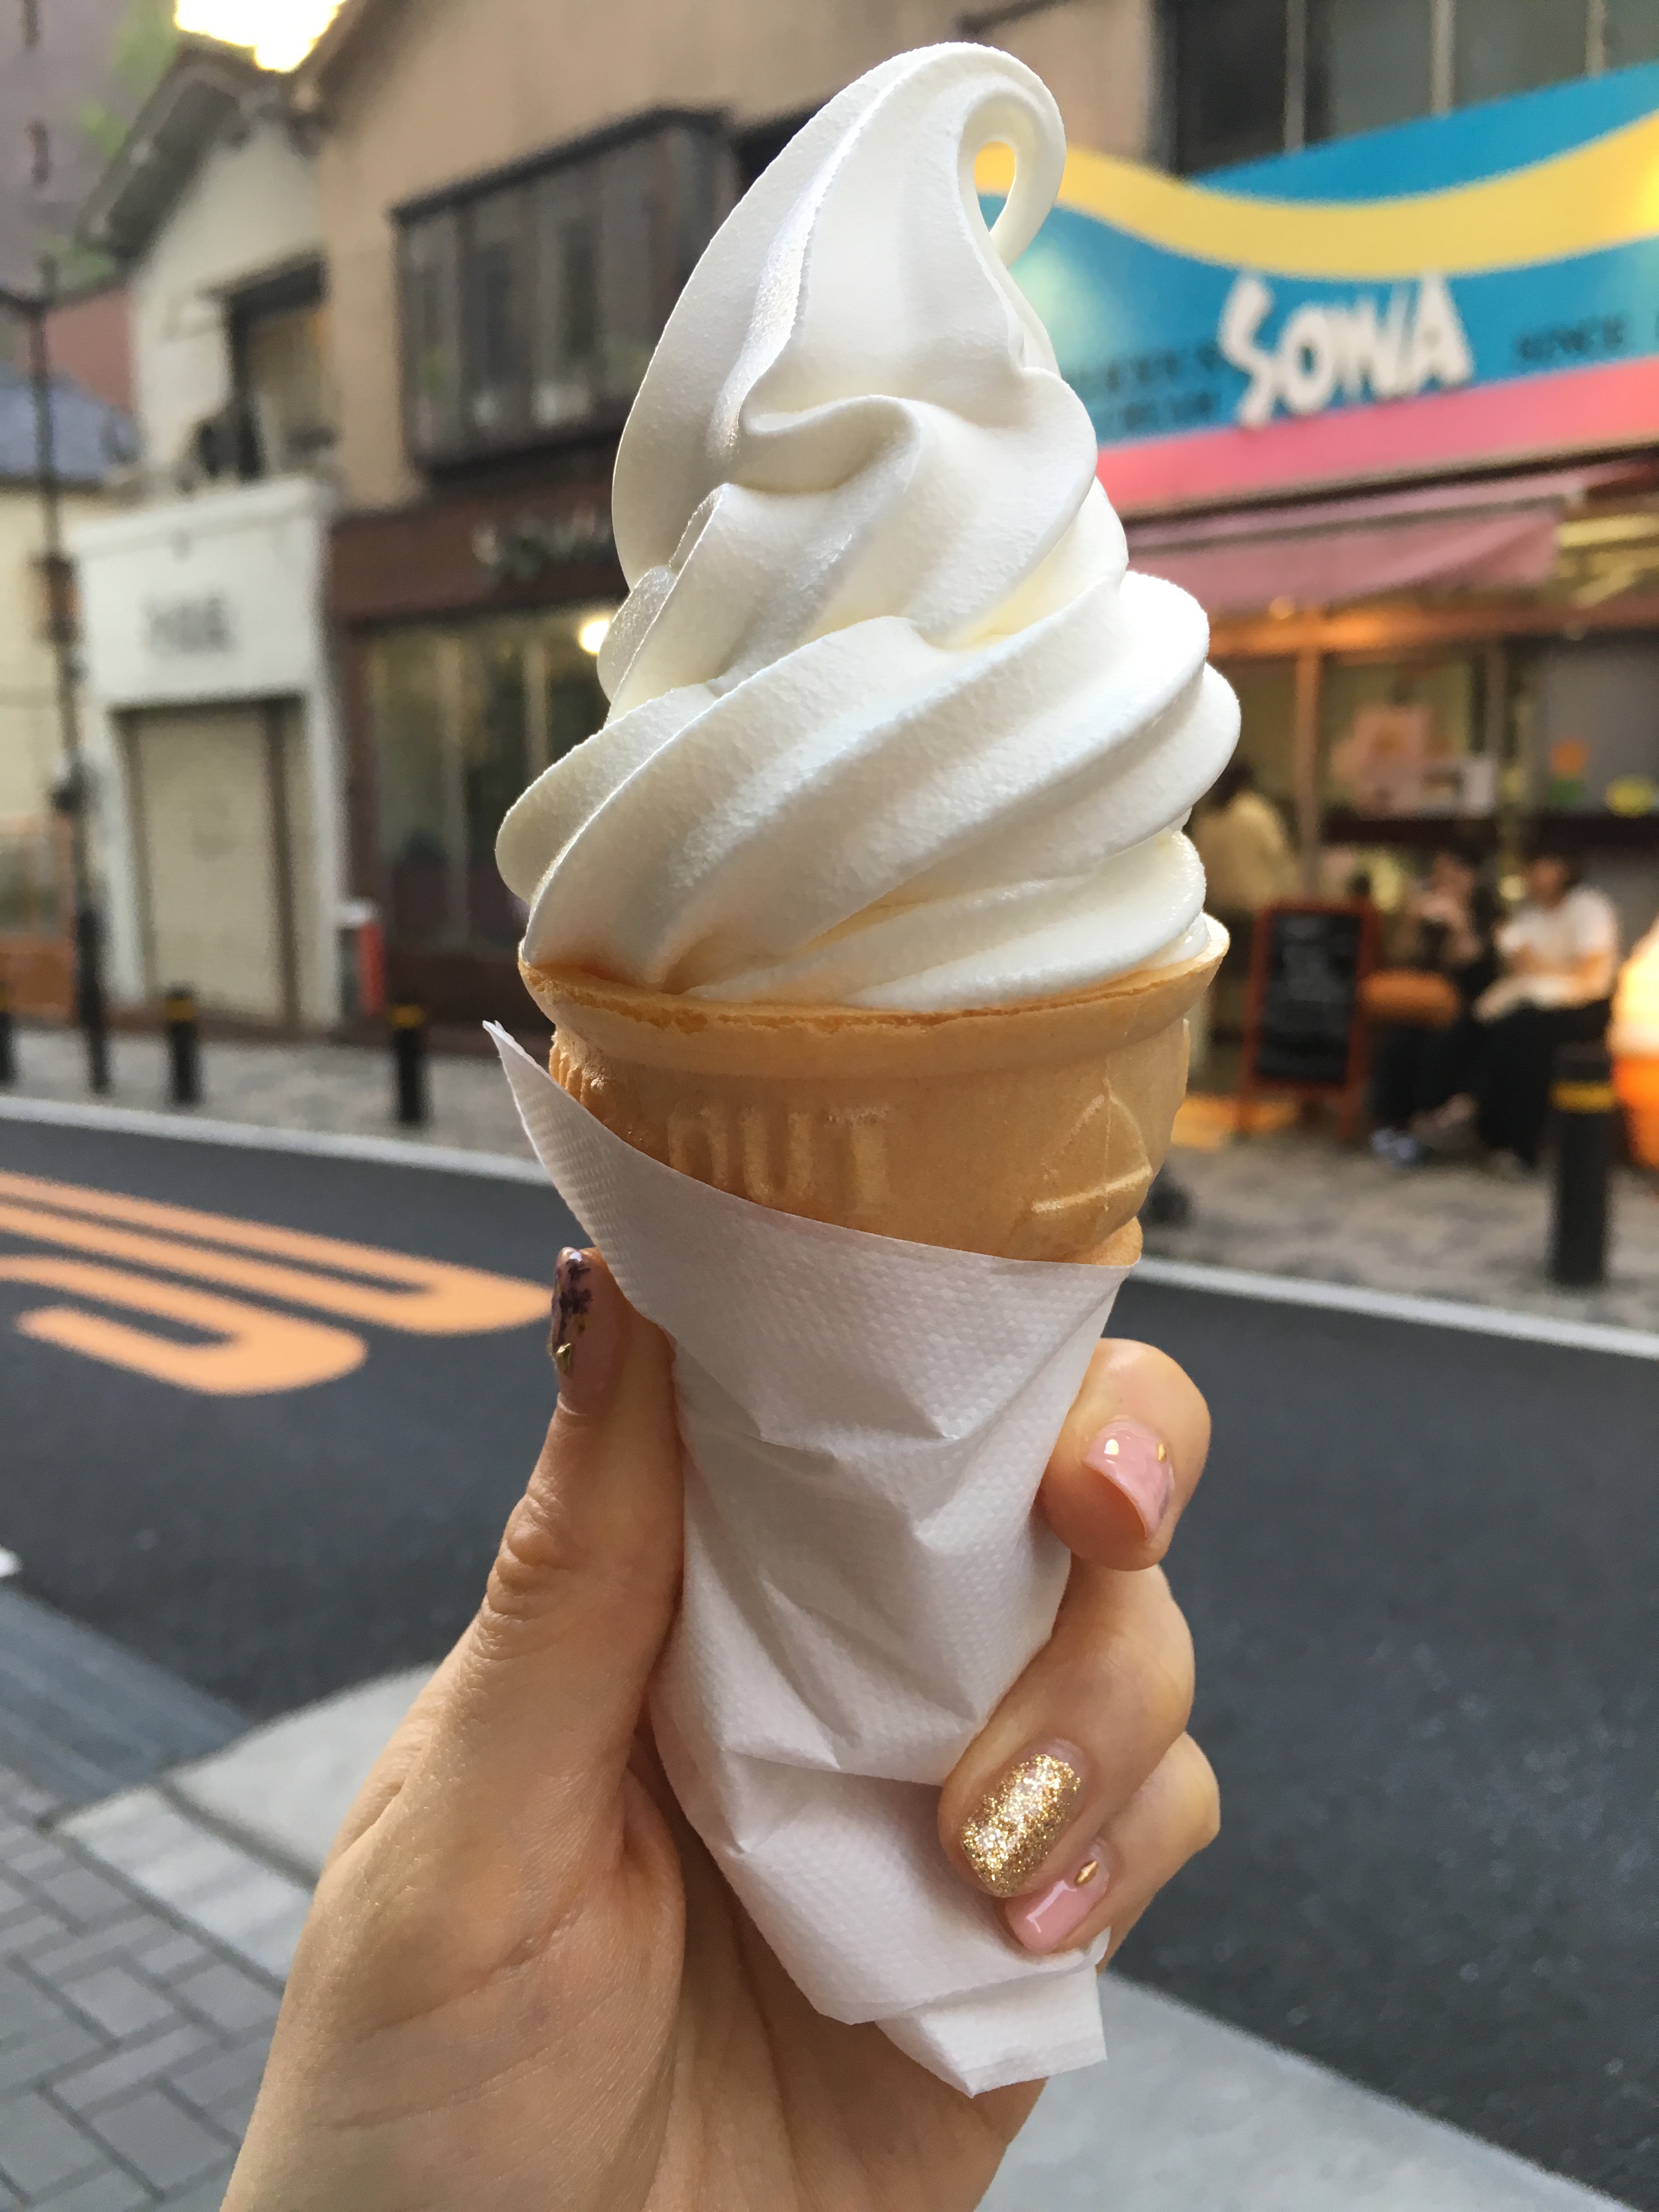 ソフカツ ソフトクリームマニアの全国ソフトクリーム食べ歩きブログ 神谷町 Sowa アイスクリーム バニラソフトクリーム